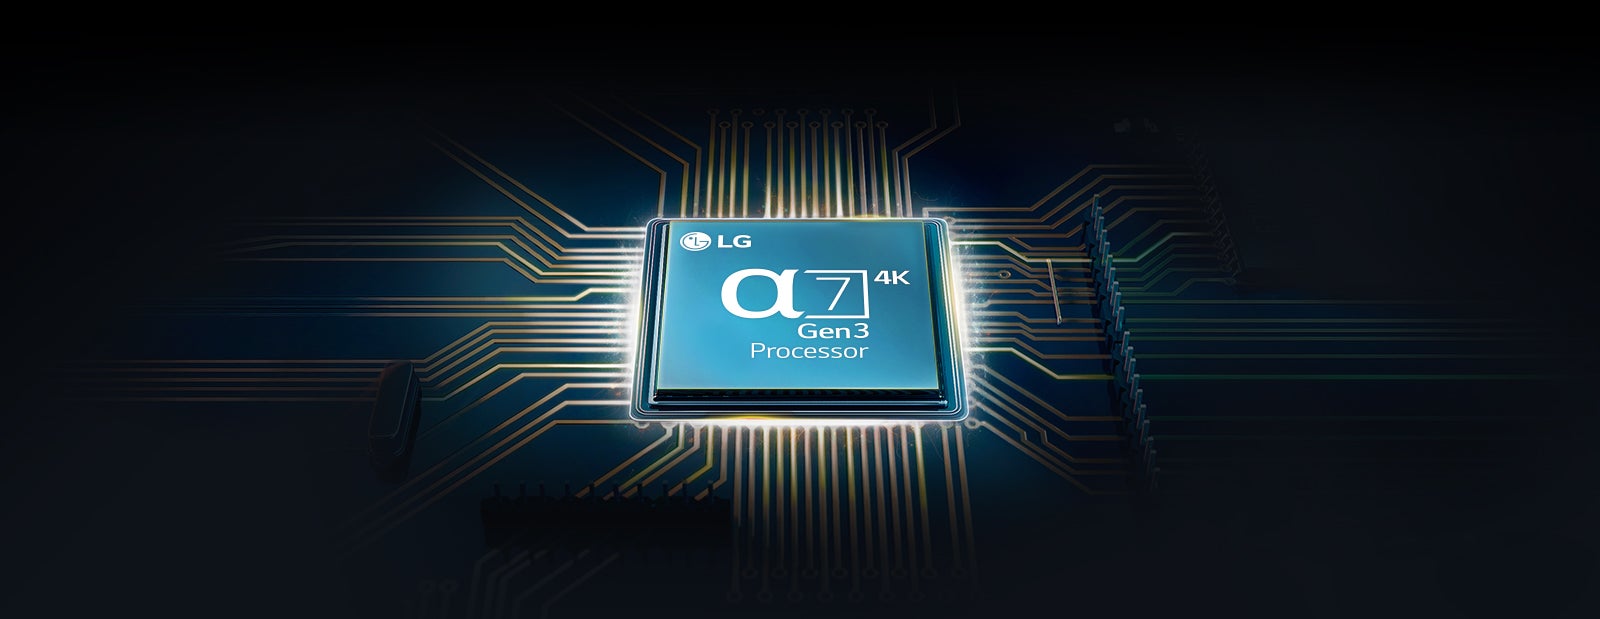 Α7 Gen3 Intelligent Processor 4k